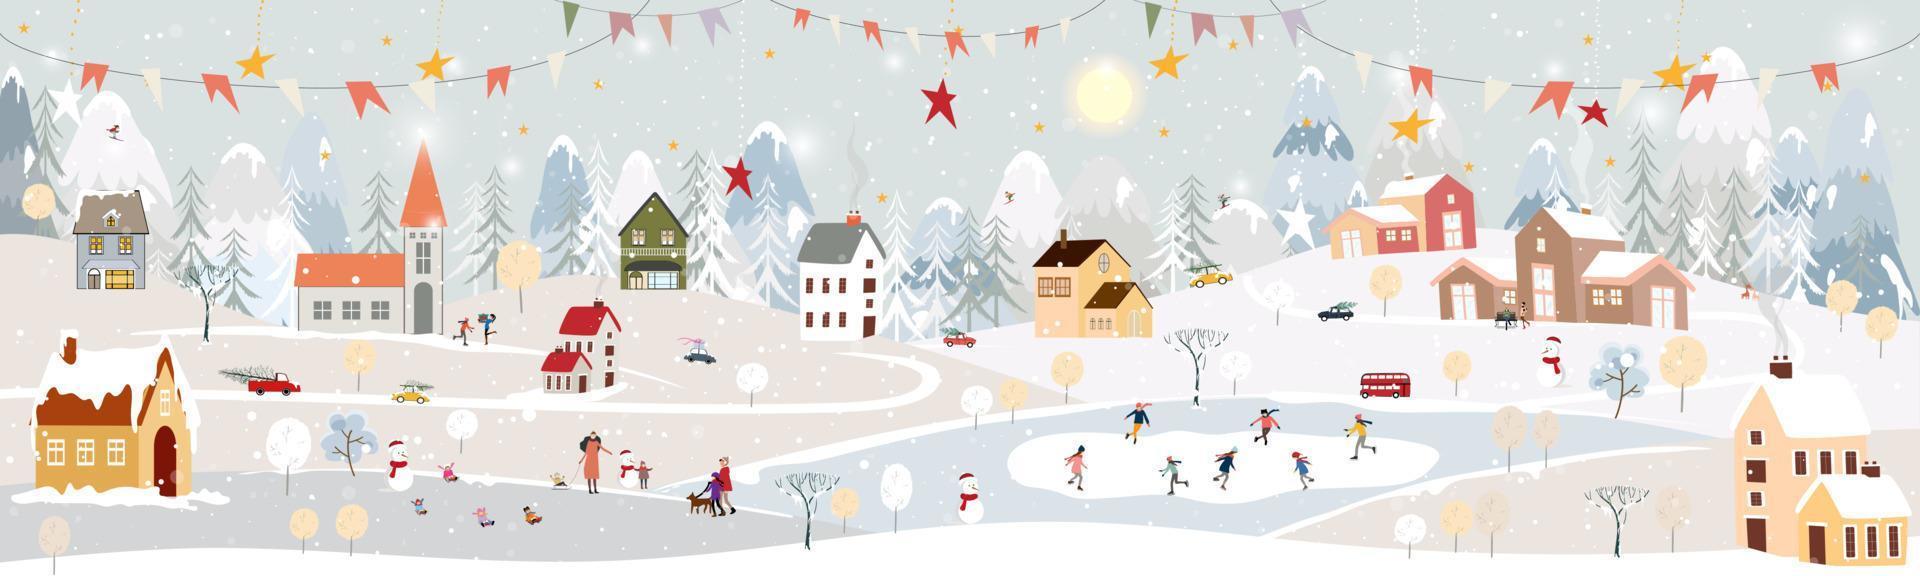 paisagem de inverno, comemorando o natal e o ano novo 2023 na vila à noite com urso polar feliz jogando patins de gelo no parque, vetor de banner horizontal país das maravilhas do inverno na zona rural